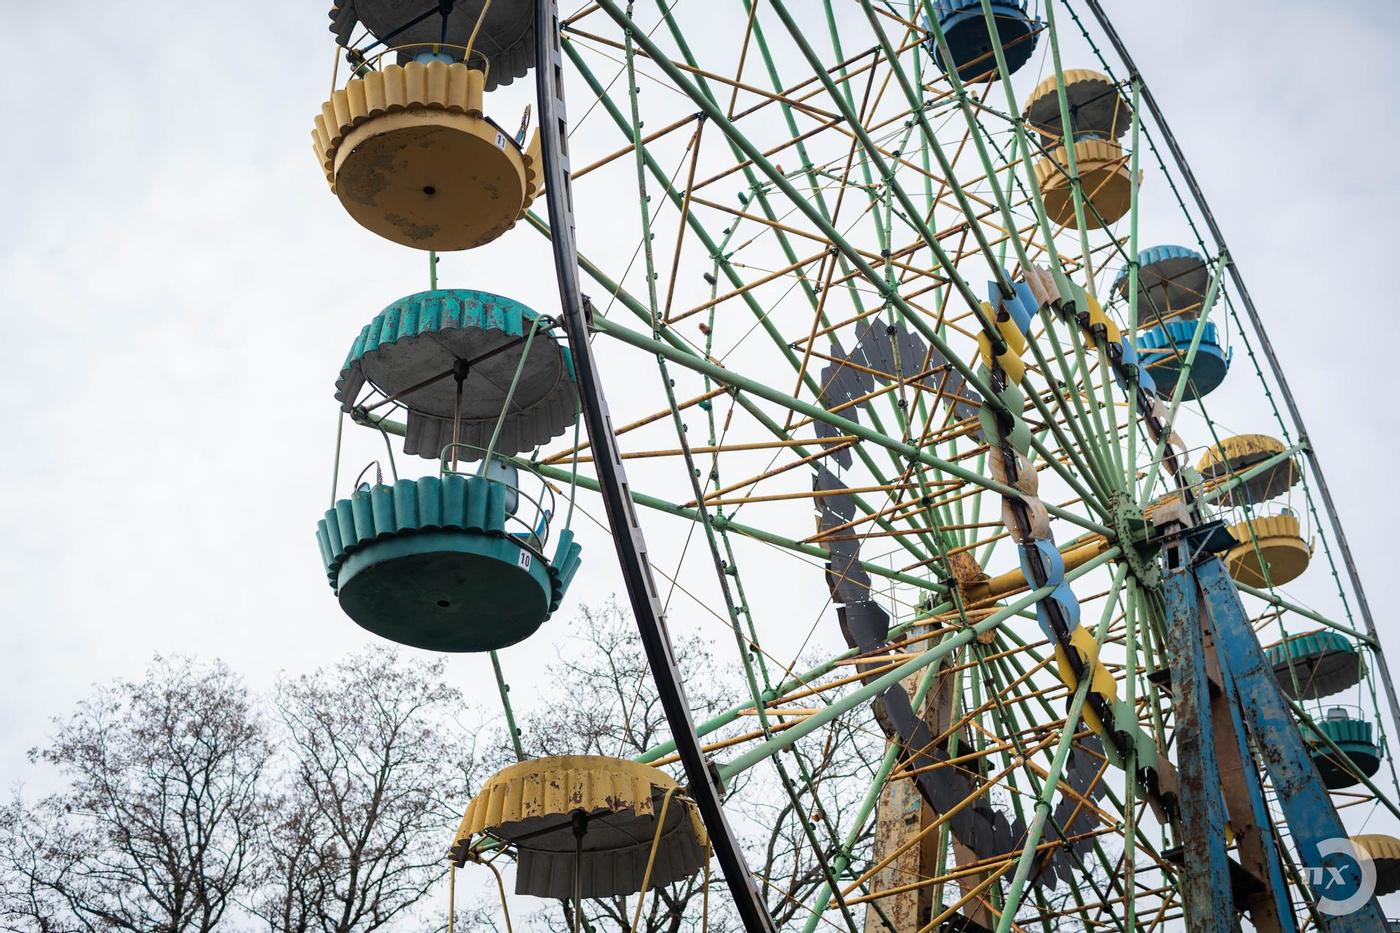 Оглядове колесо, атракціон оглядове колесо, оглядове колесо в парку, оглядове колесо у парку «Перемога»